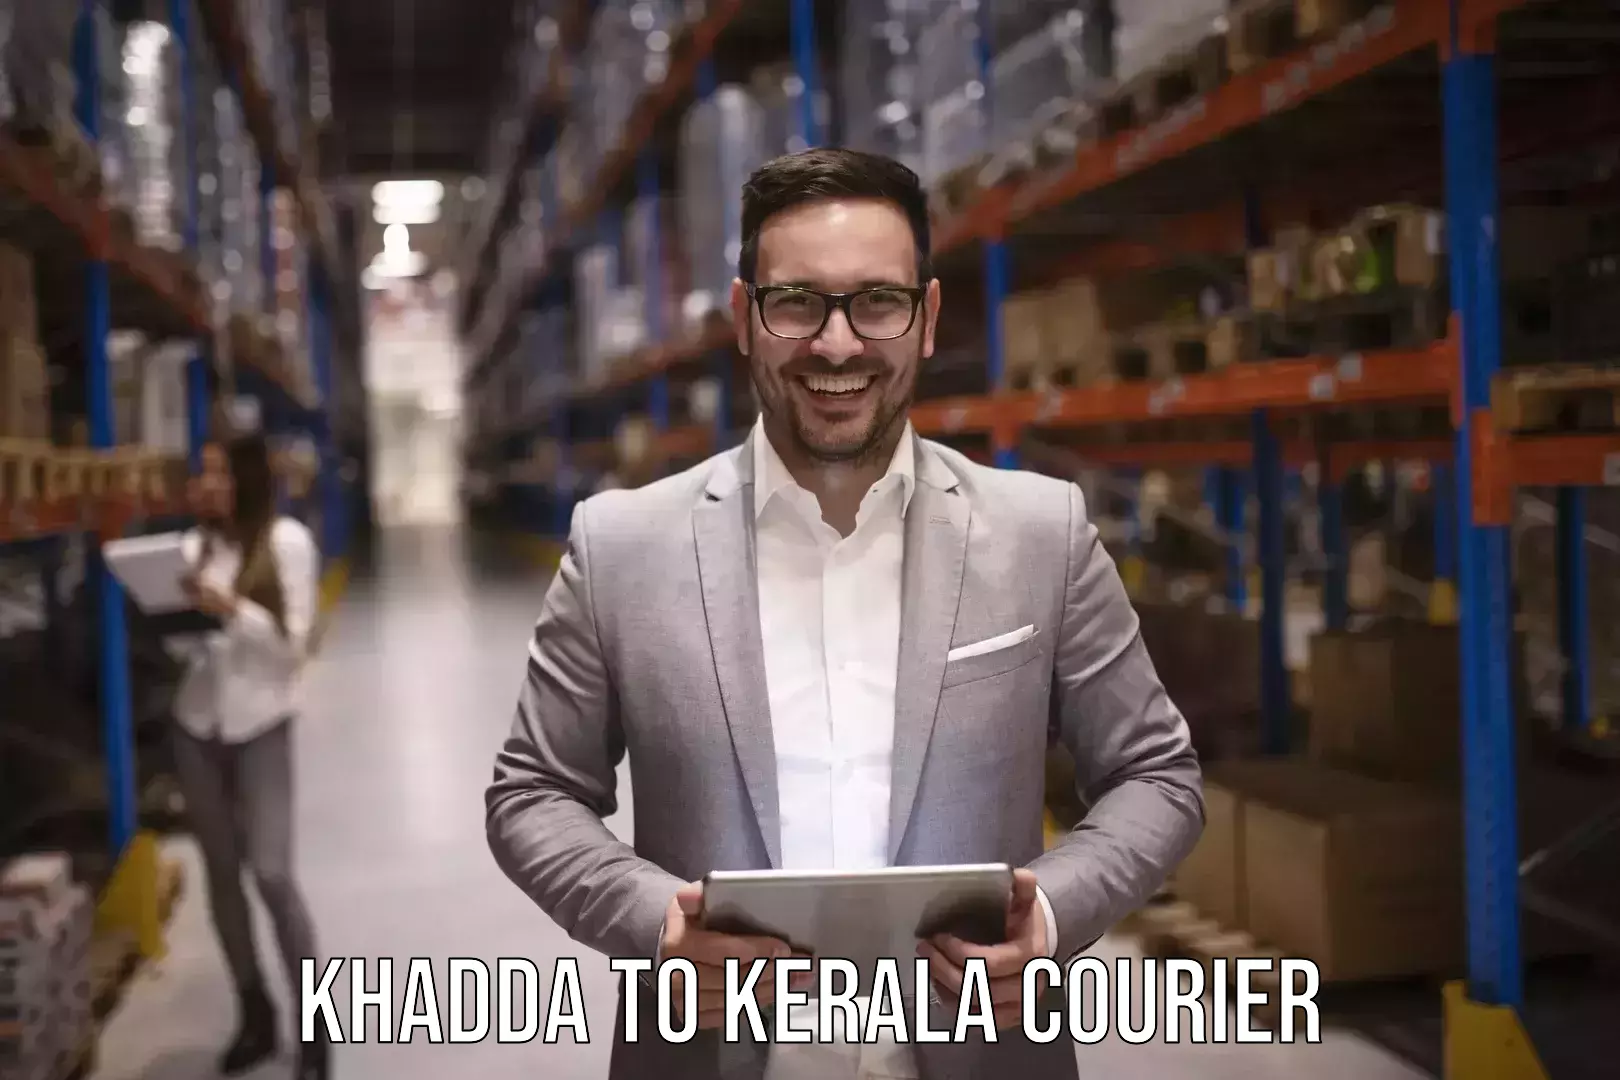 Baggage shipping calculator Khadda to Kerala